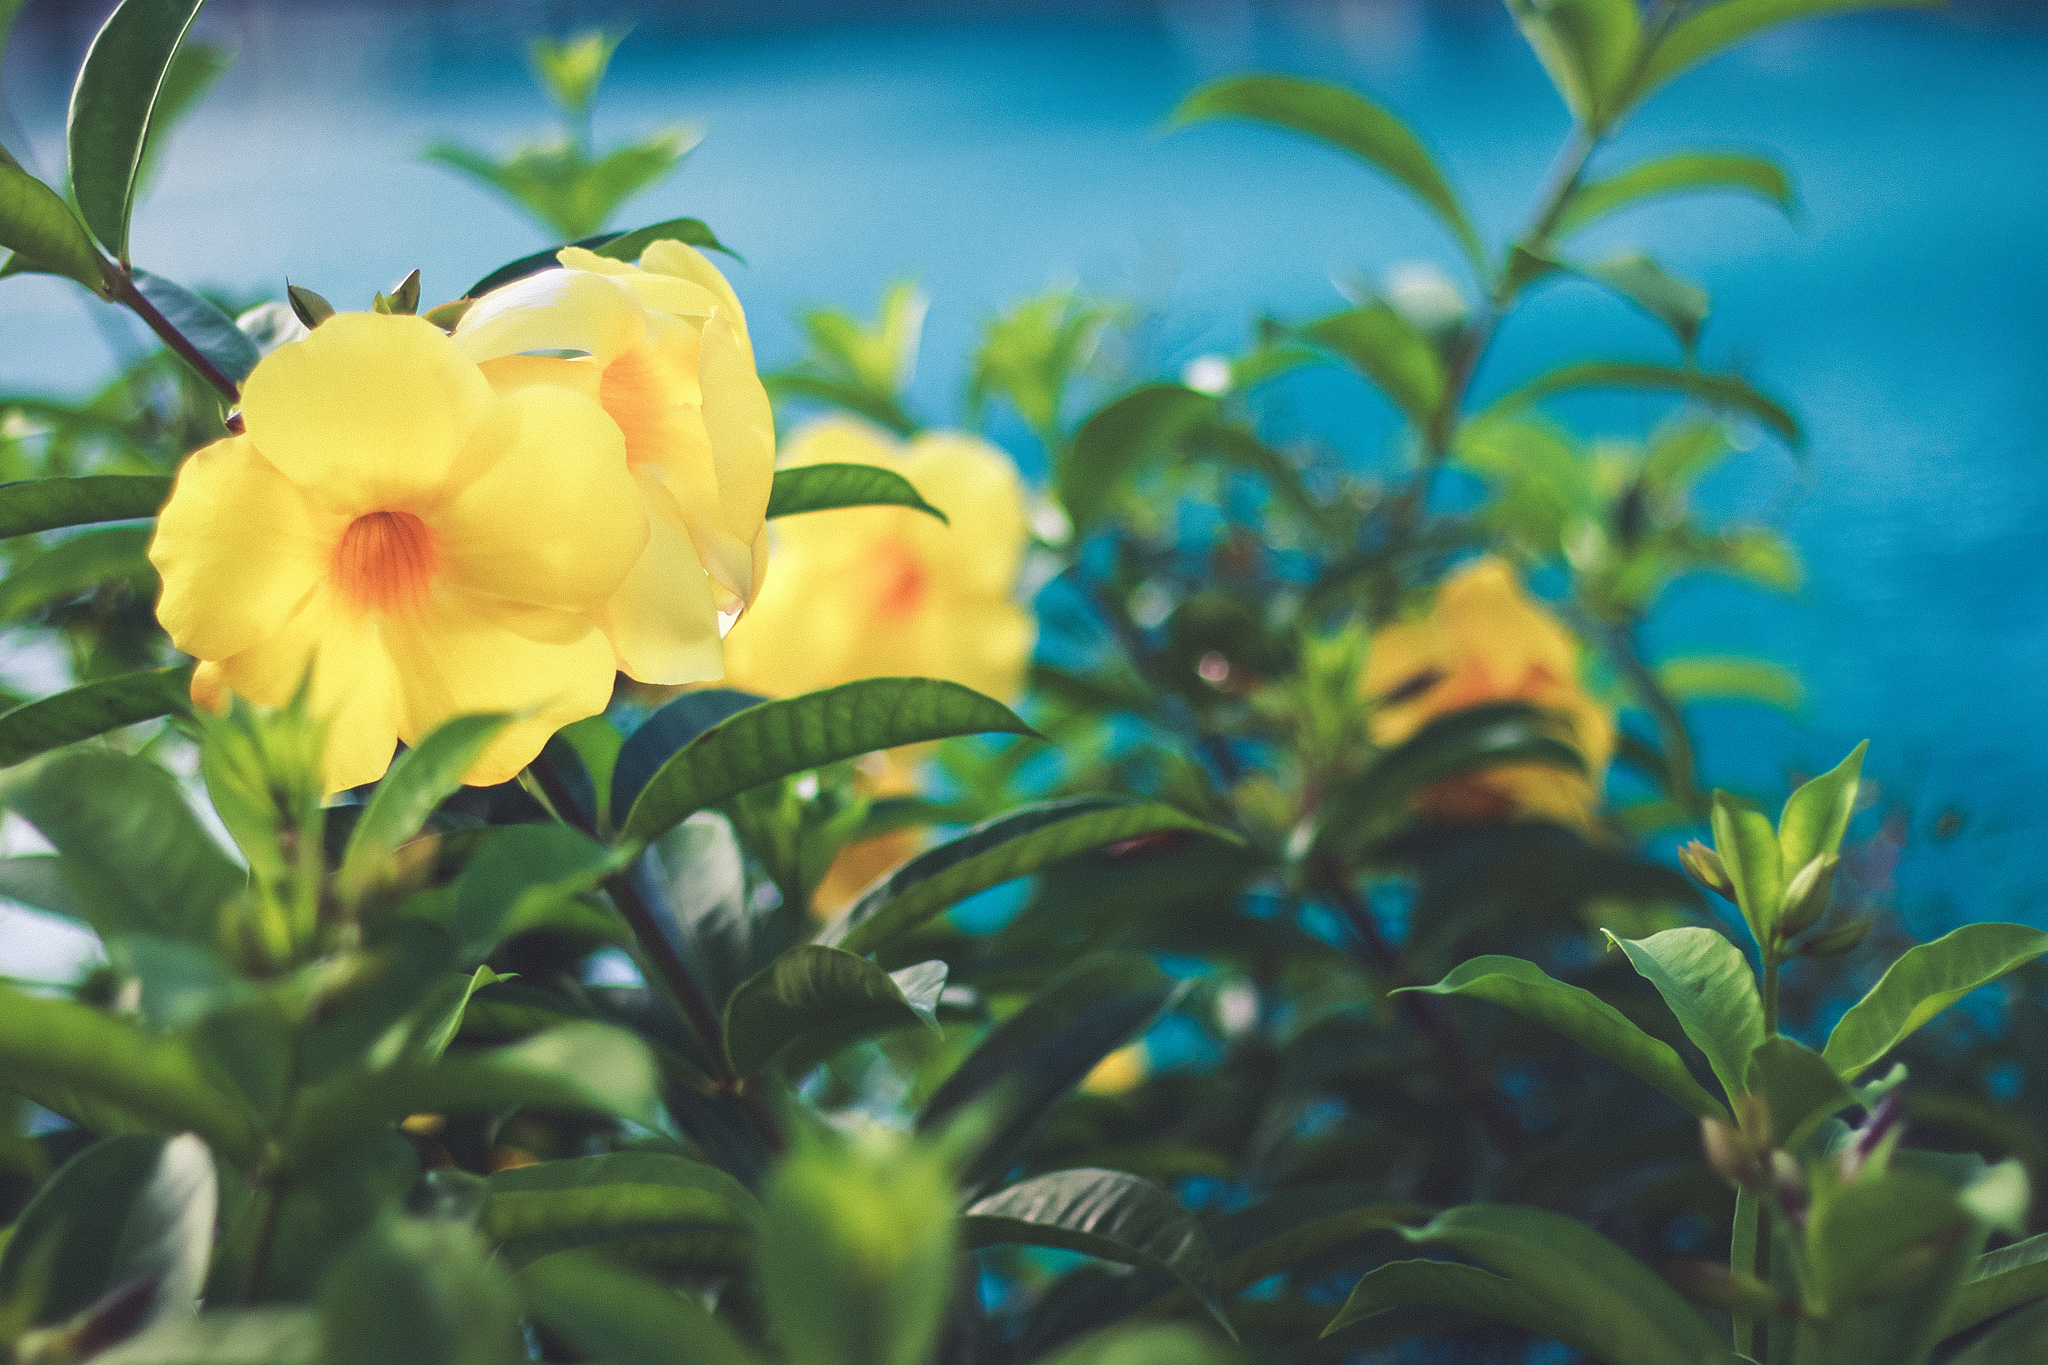 ハイビスカスに似ている南国の黄色い花 オオバナアリアケカズラ のフリー画像 おしゃれなフリー写真素材 Girly Drop